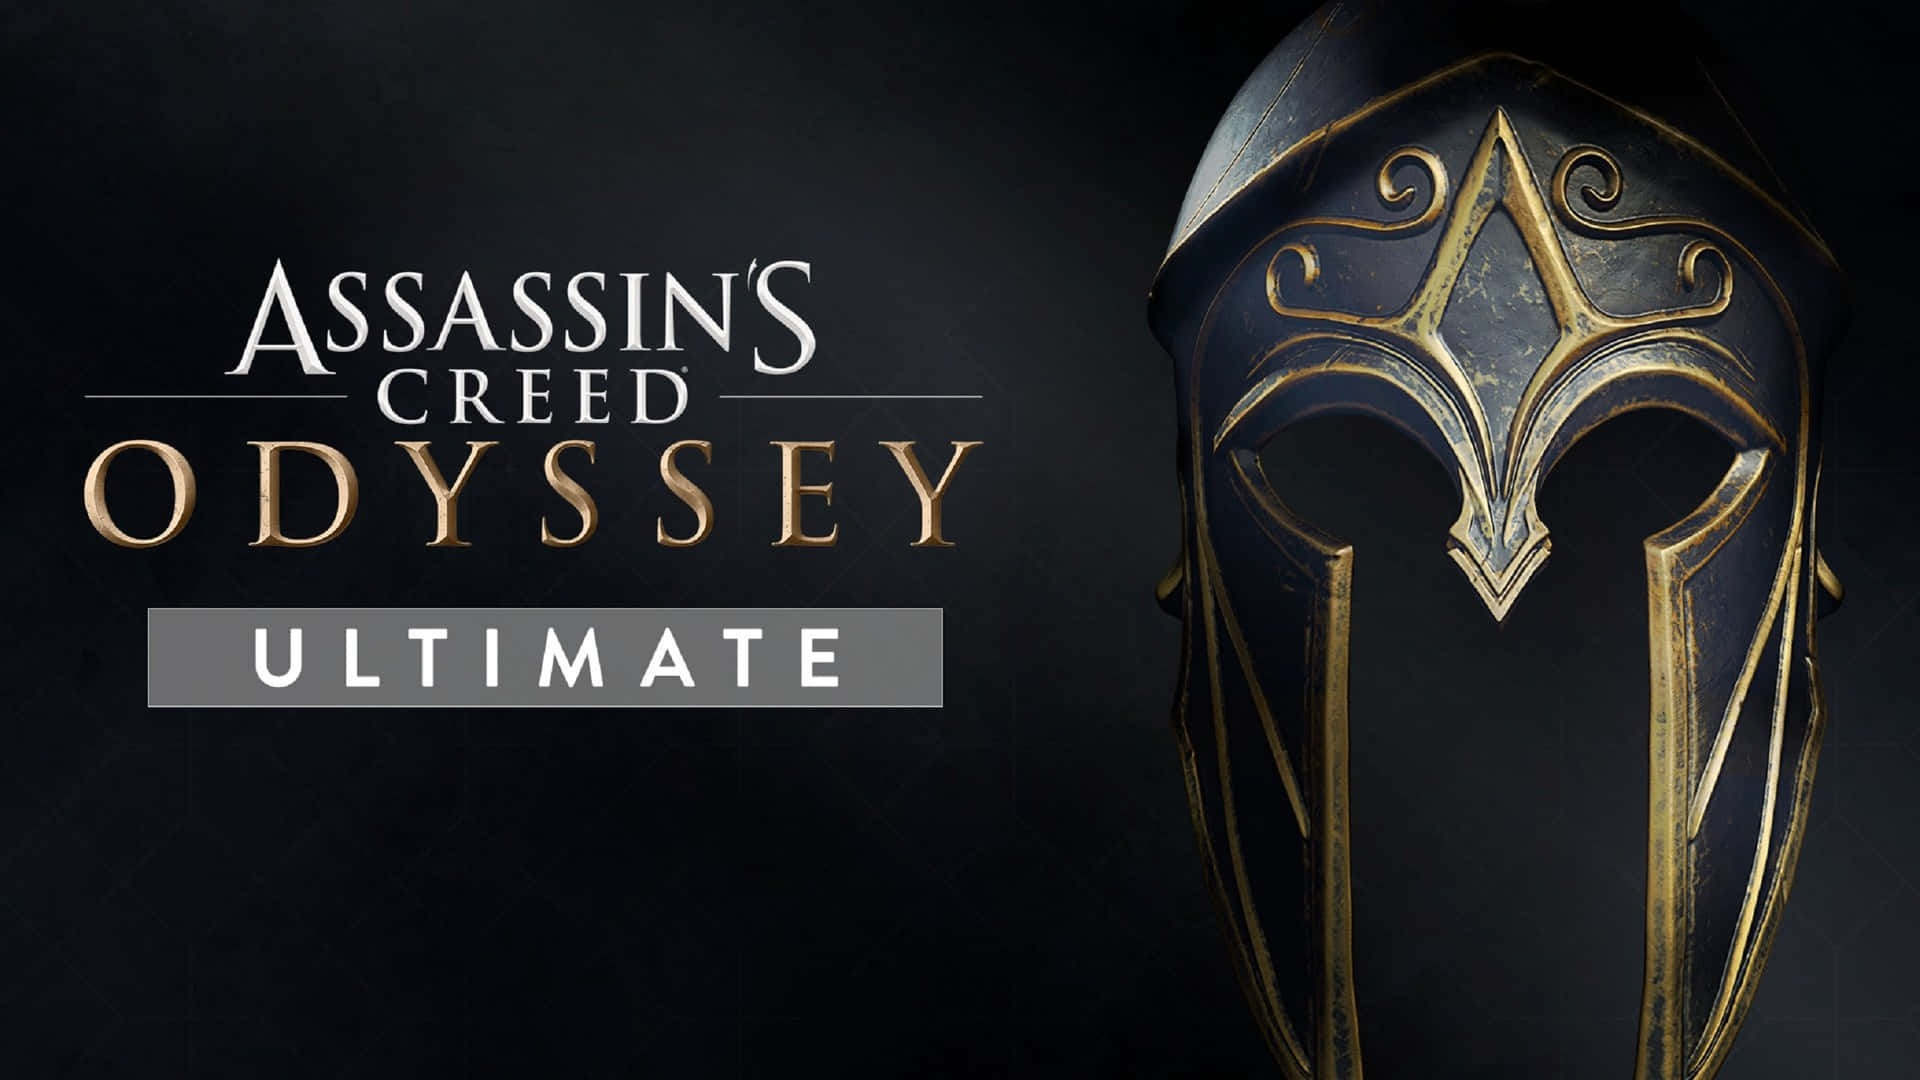 1920x1080bakgrundsbild Med Hjälm Från Assassin’s Creed Odyssey.